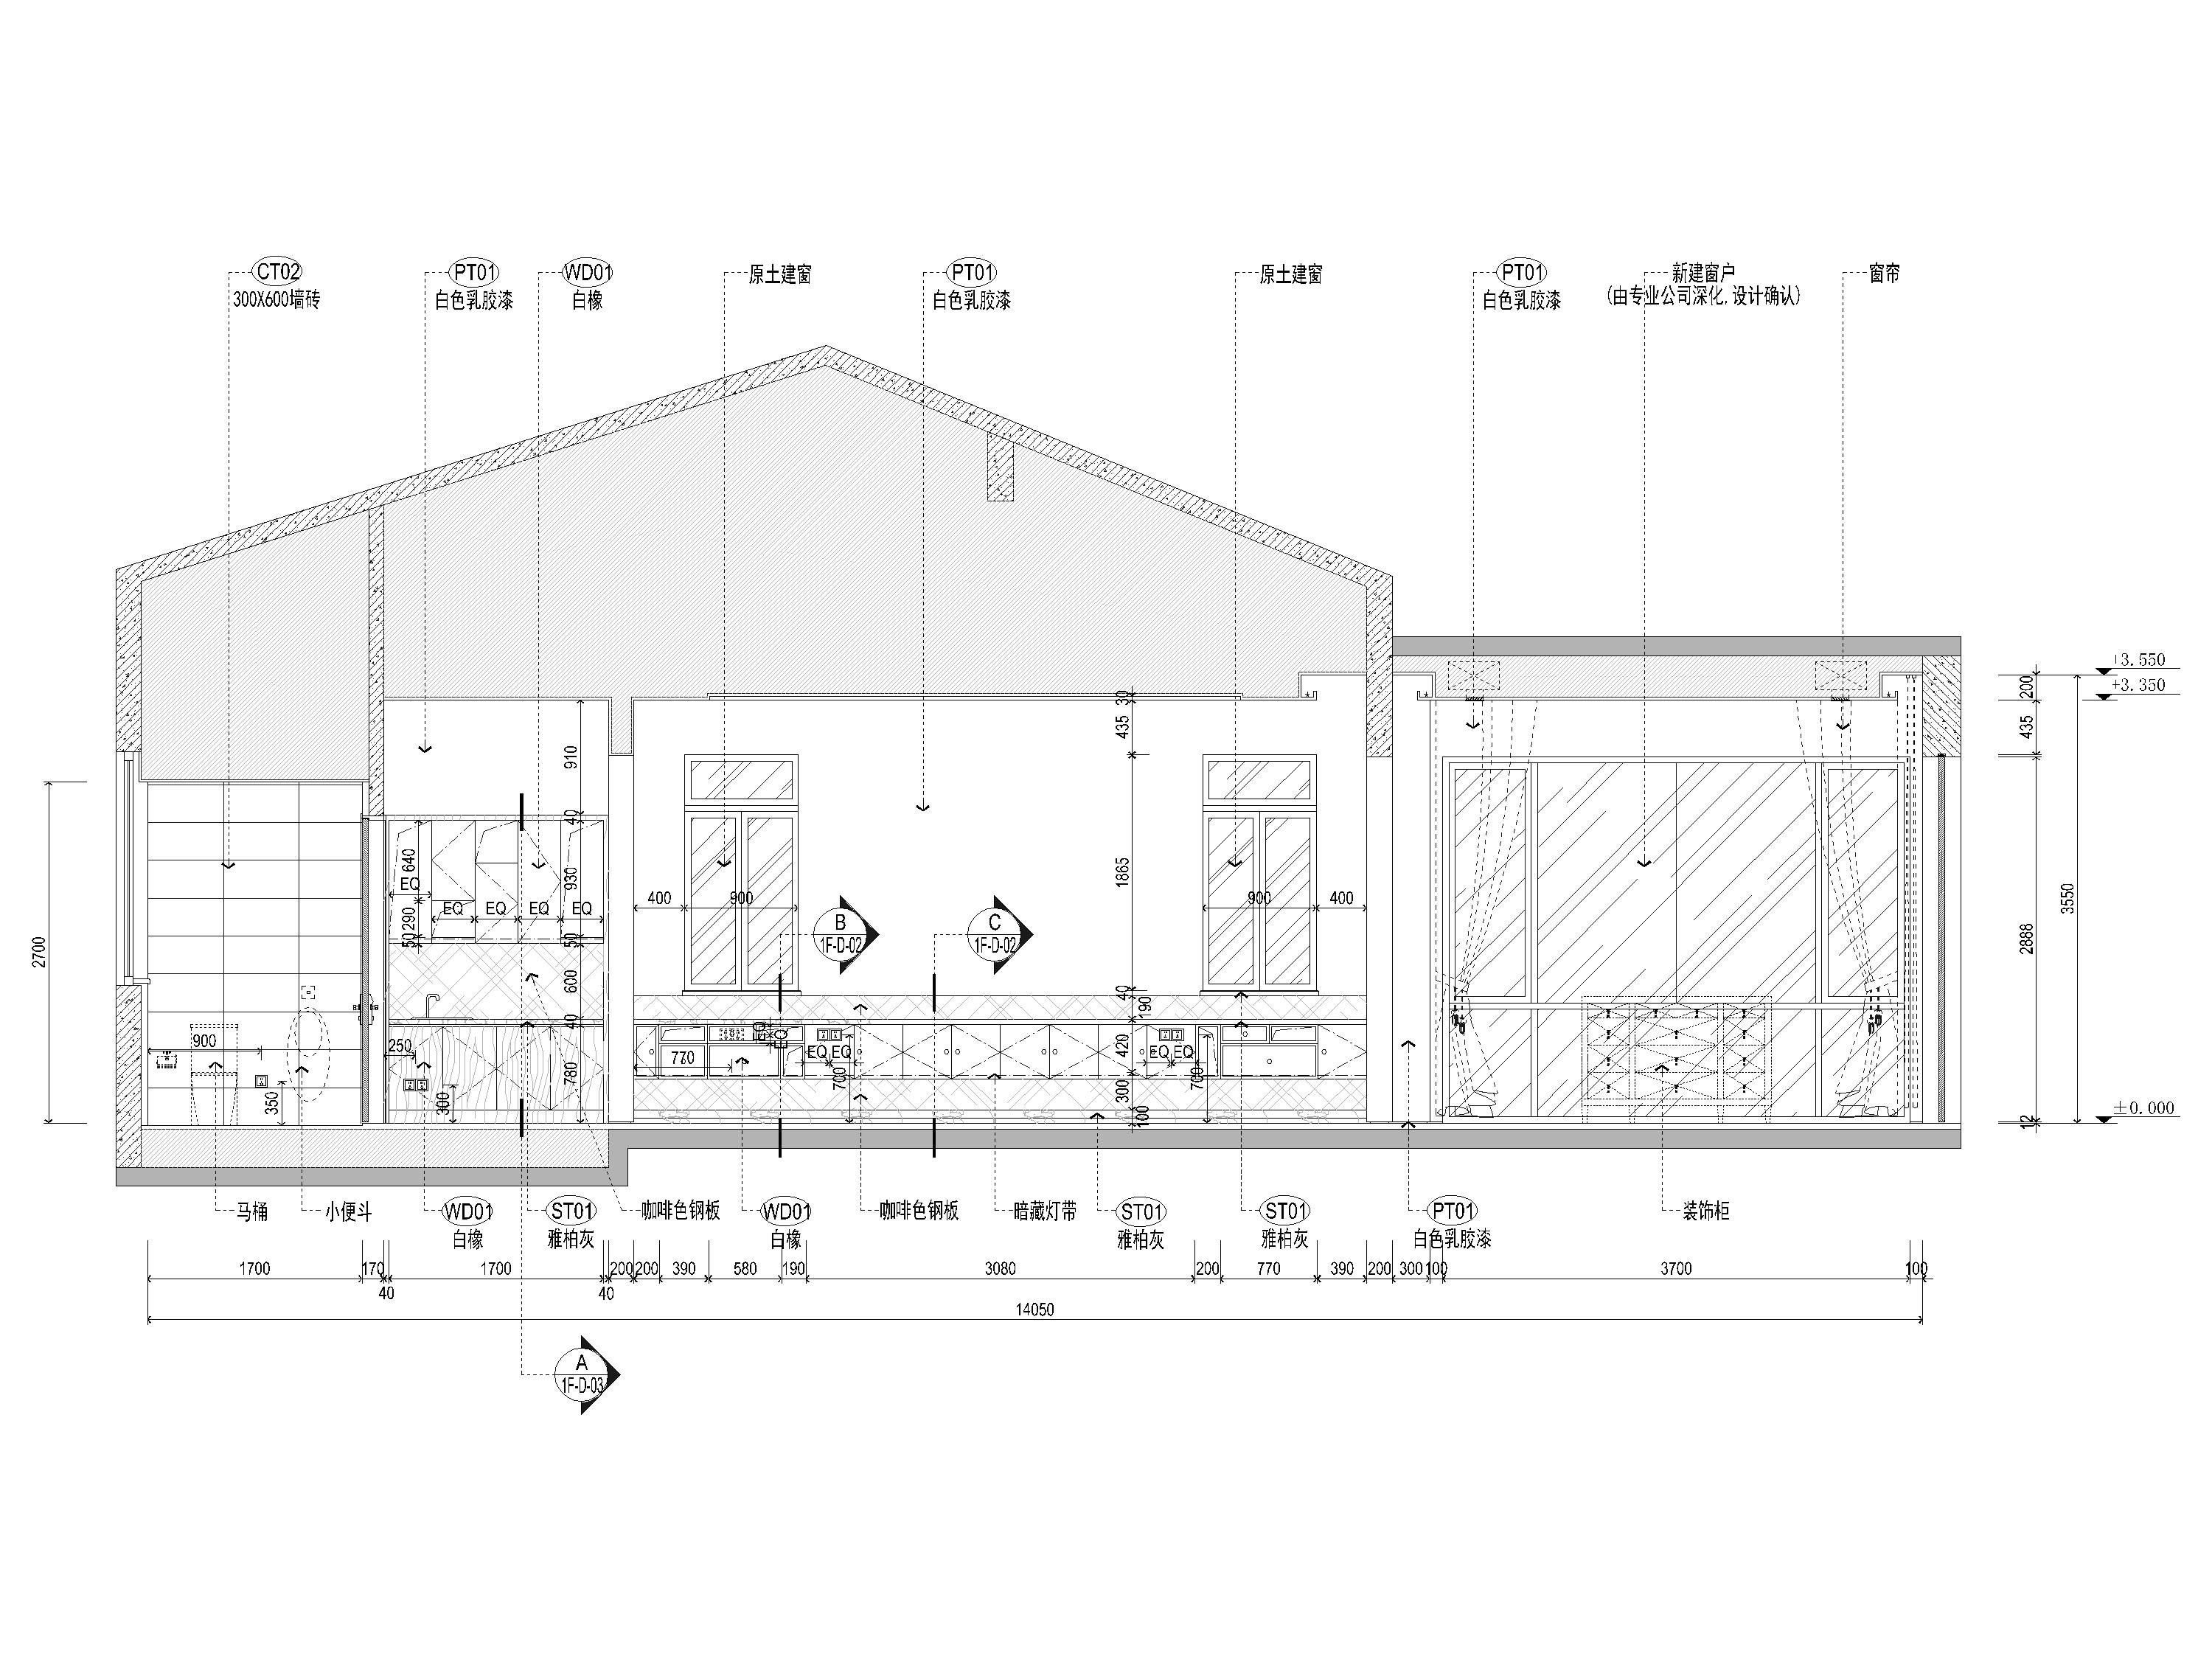 [海南]900m²六居别墅装修设计施工图+3D模型-茶室、麻将室立面图